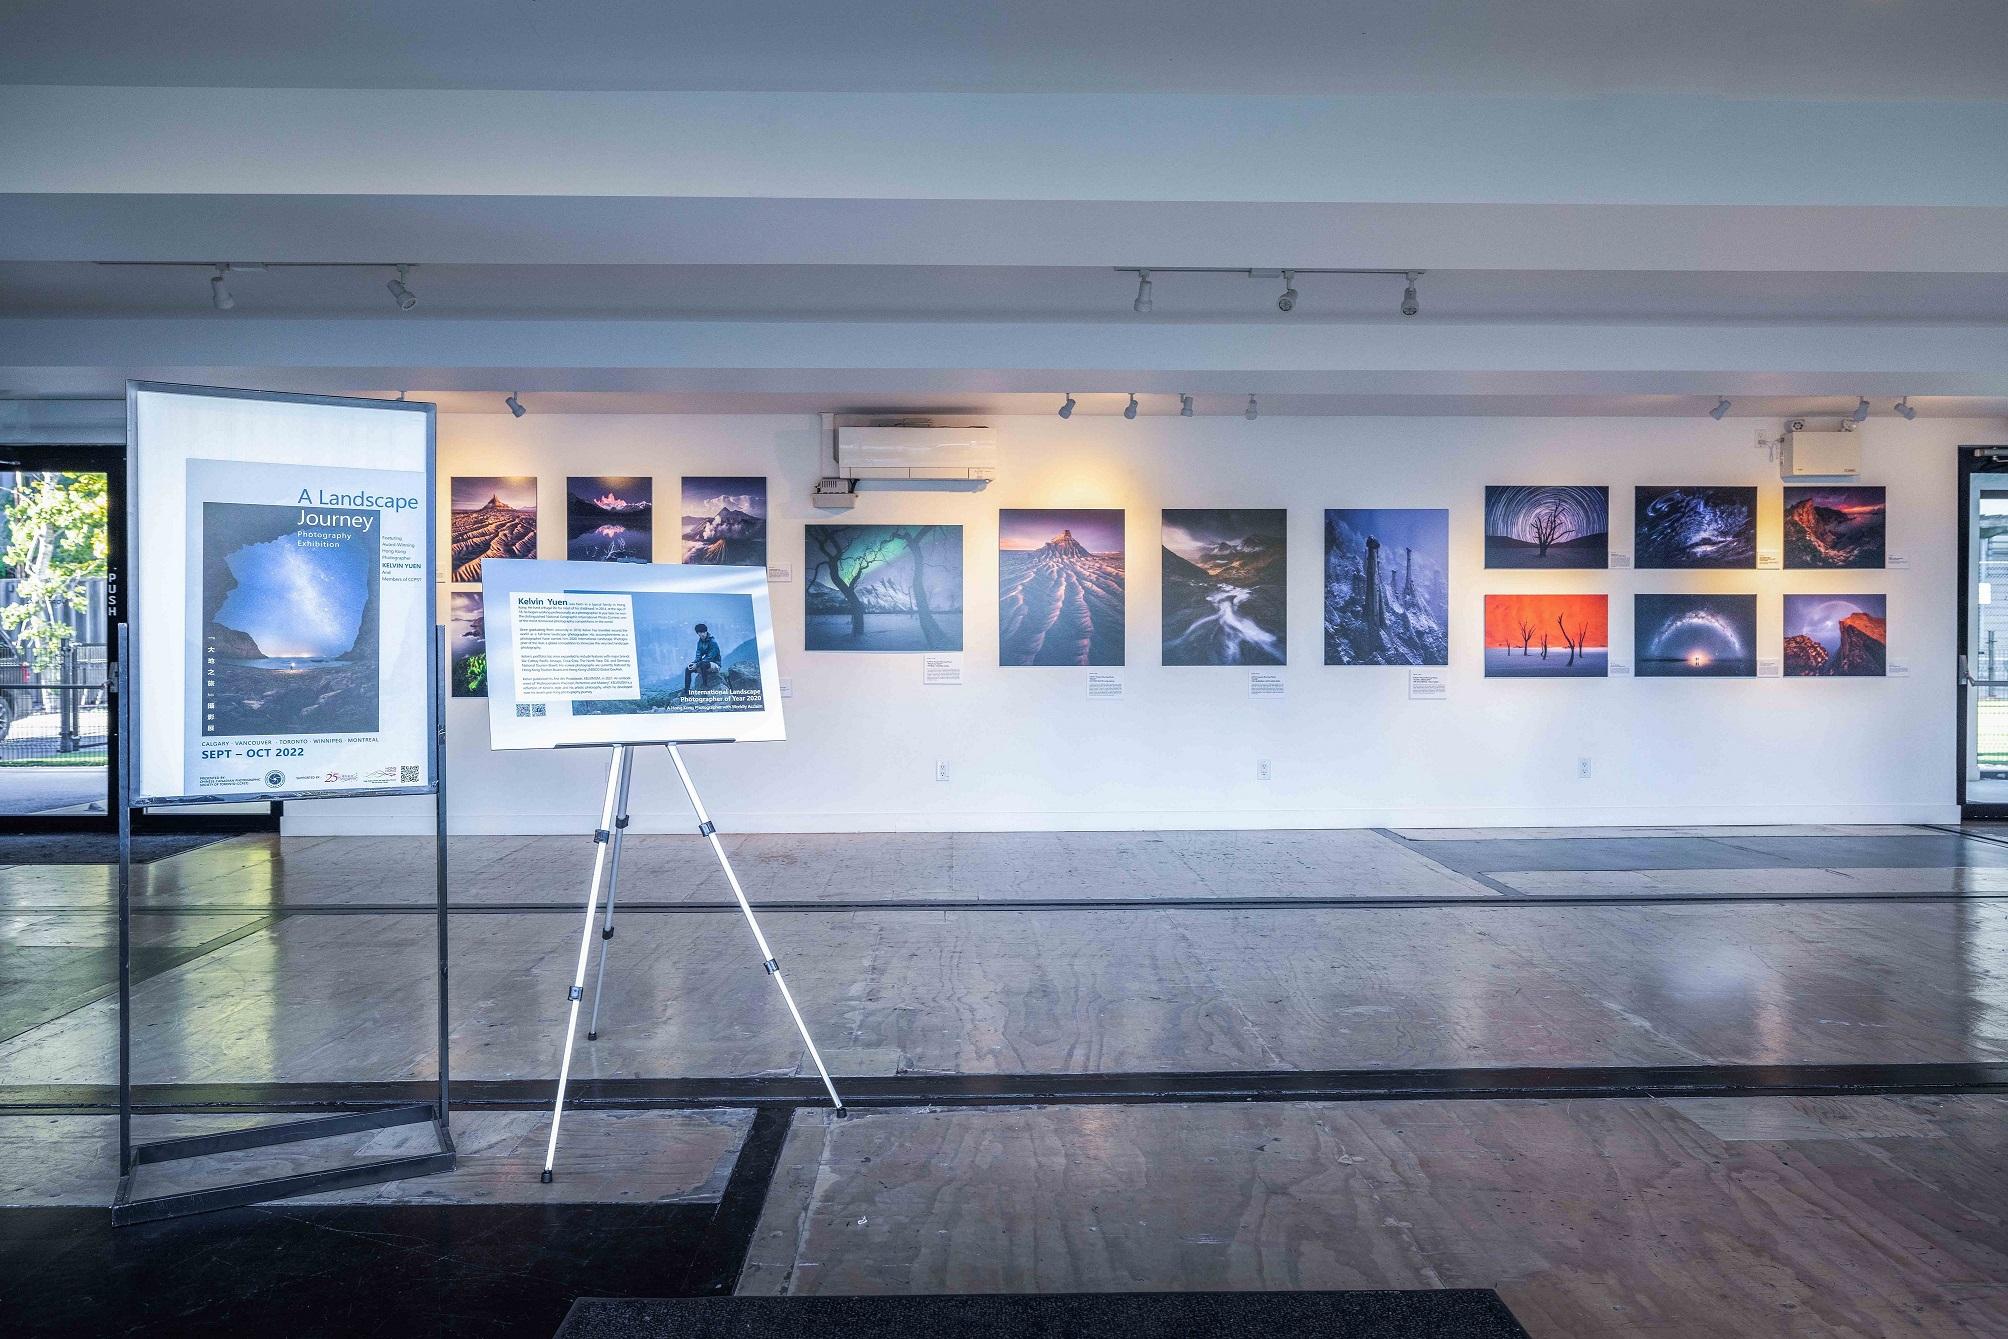 香港駐多倫多經濟貿易辦事處在加拿大舉辦「大地之旅」巡迴攝影展覽，攝影展的多倫多站昨日（多倫多時間十月四日）在多倫多市中心Stackt Market的North Hall Gallery舉行開幕禮。圖示攝影展的展覽作品。